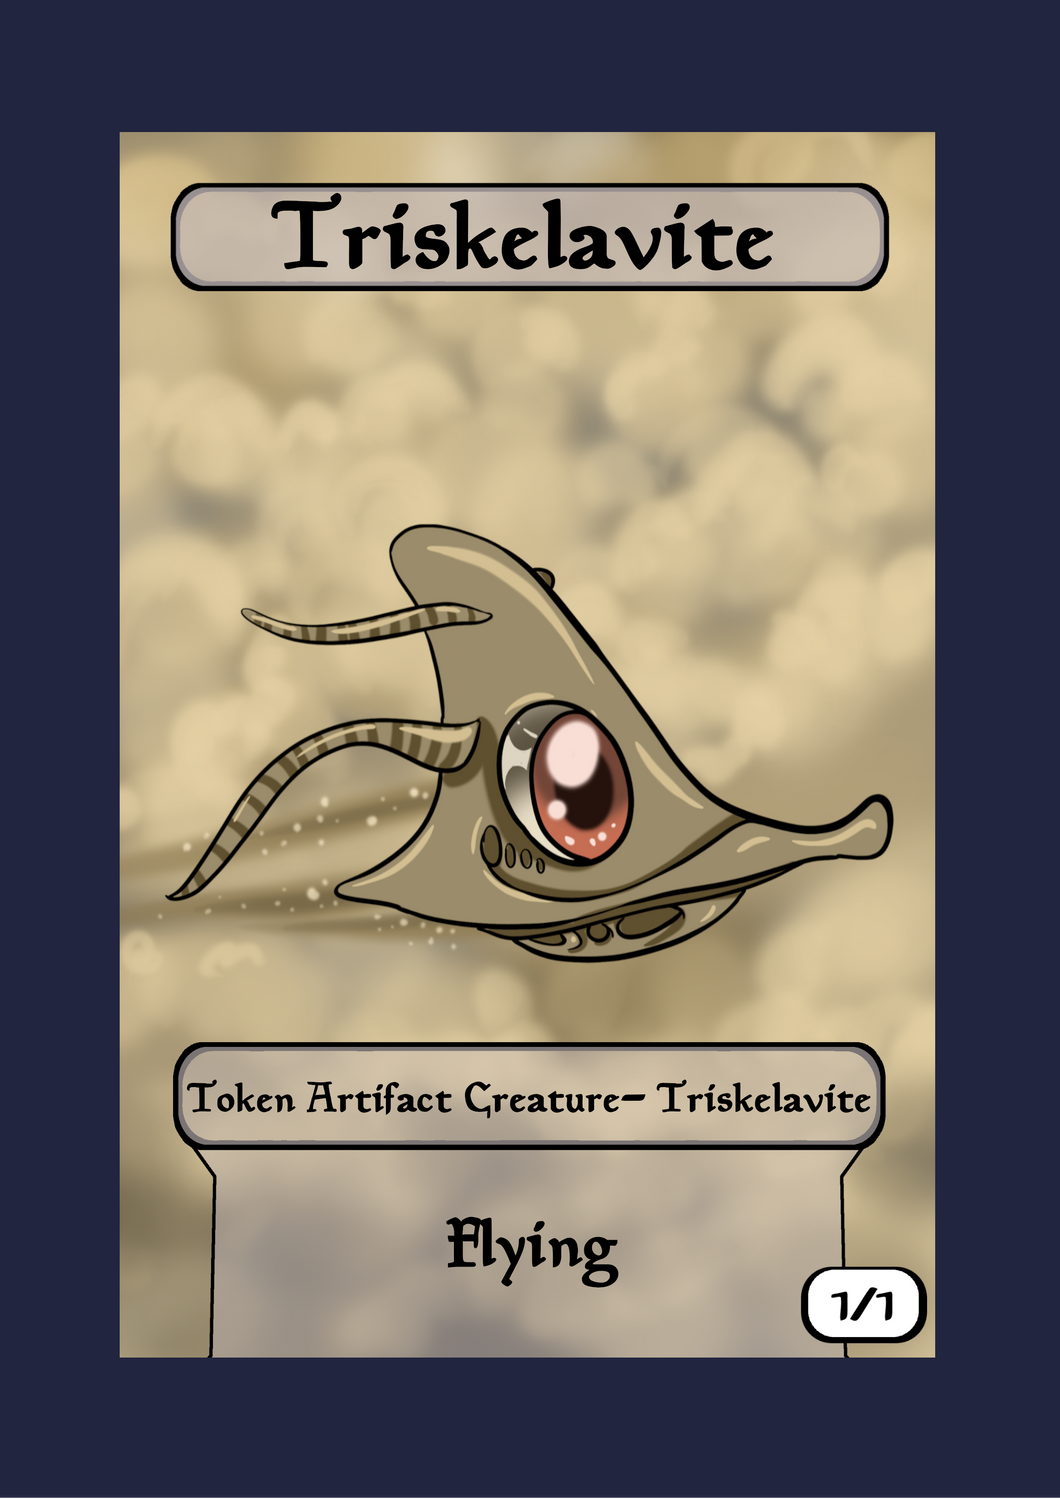 Triskelavite 1/1 w/ Flying Token